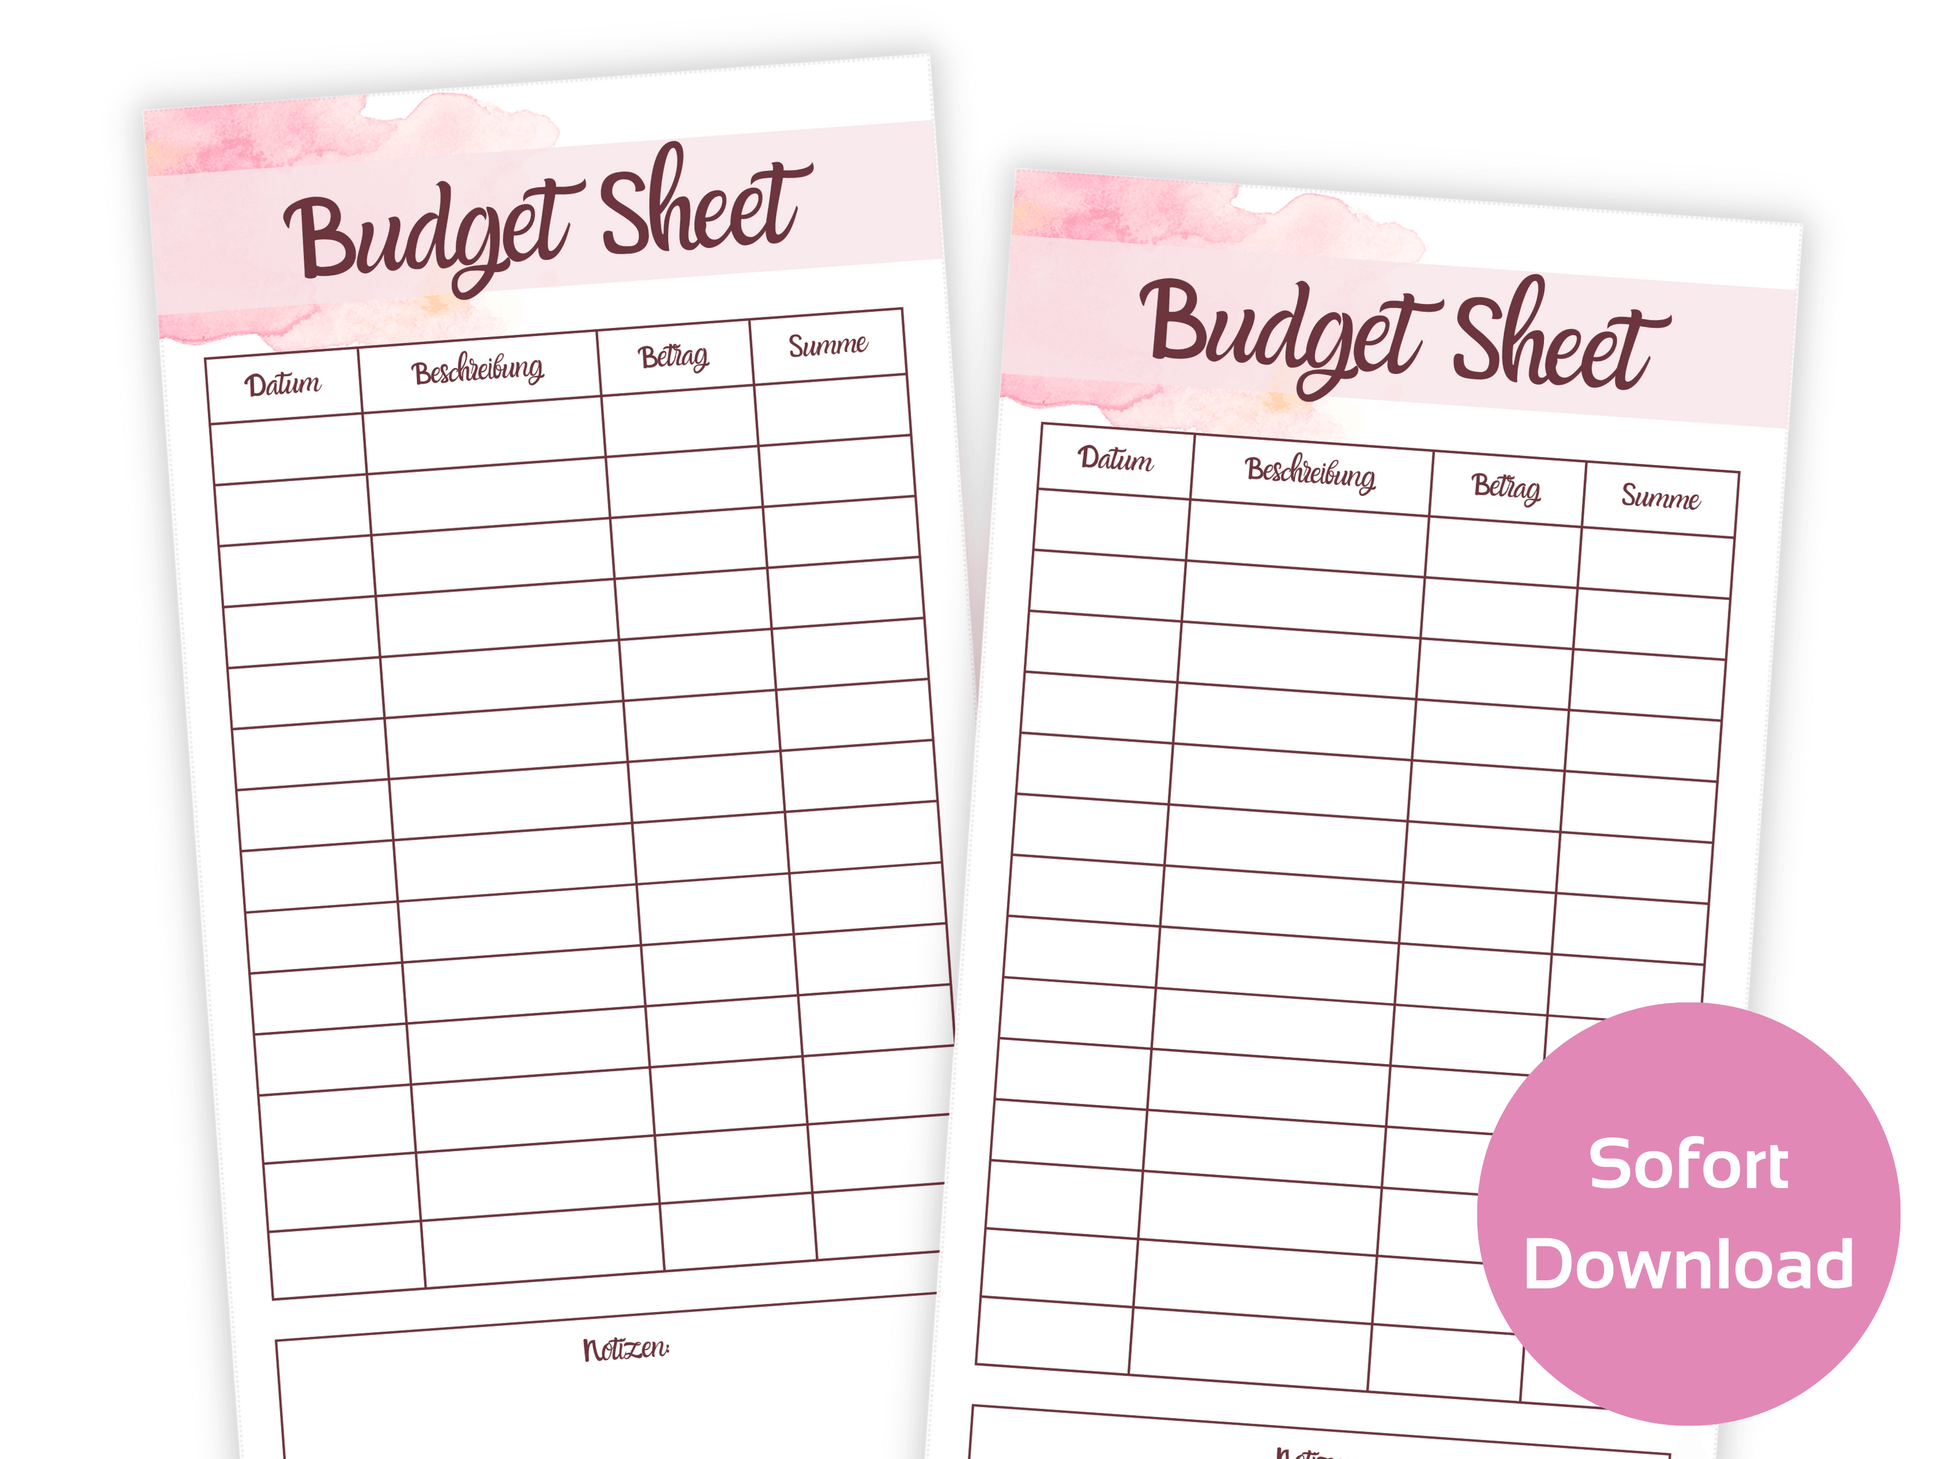 Budget Sheet Vorlage Minimalistisch - Budgethelden